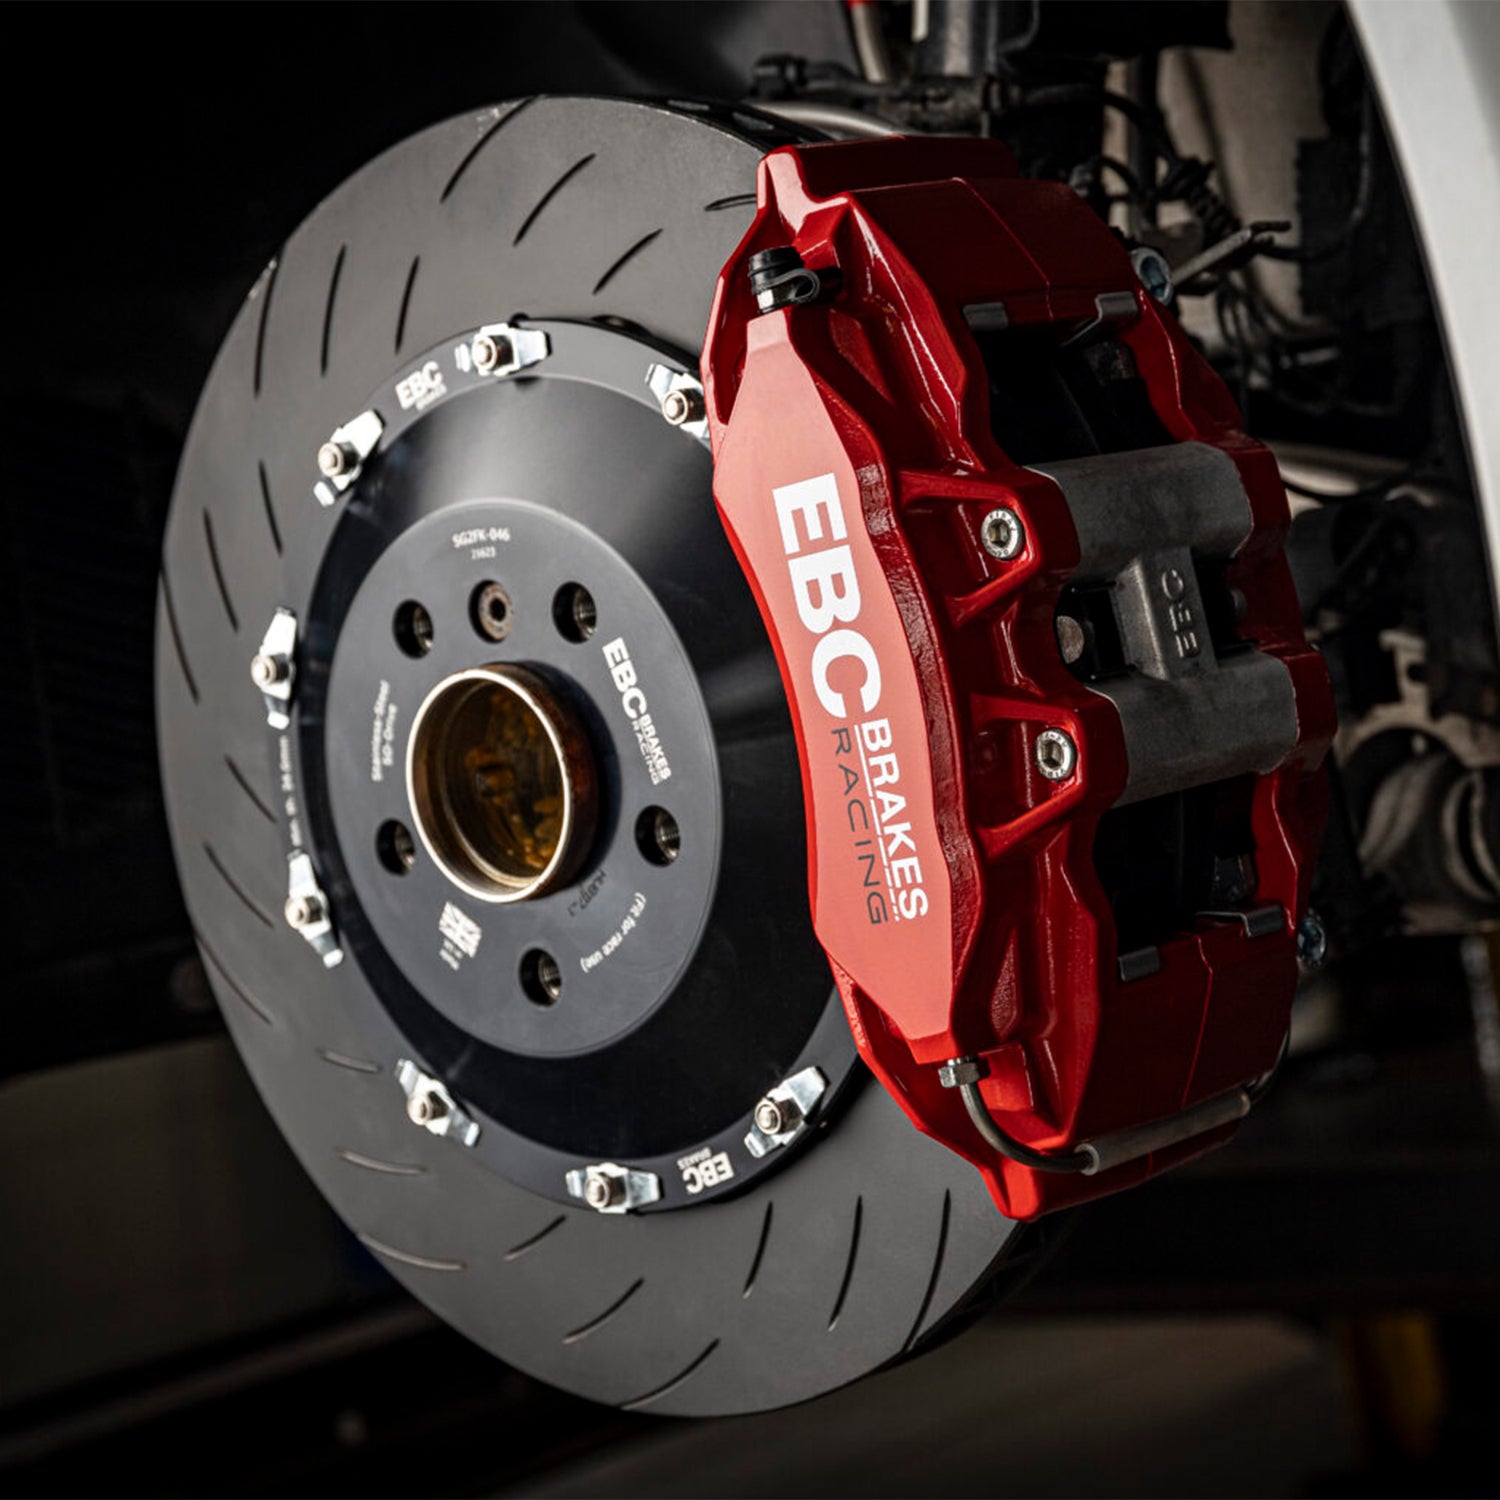 EBC Brakes 380mm 6 Piston Apollo Big Front Brake Kit For Toyota GR Supra